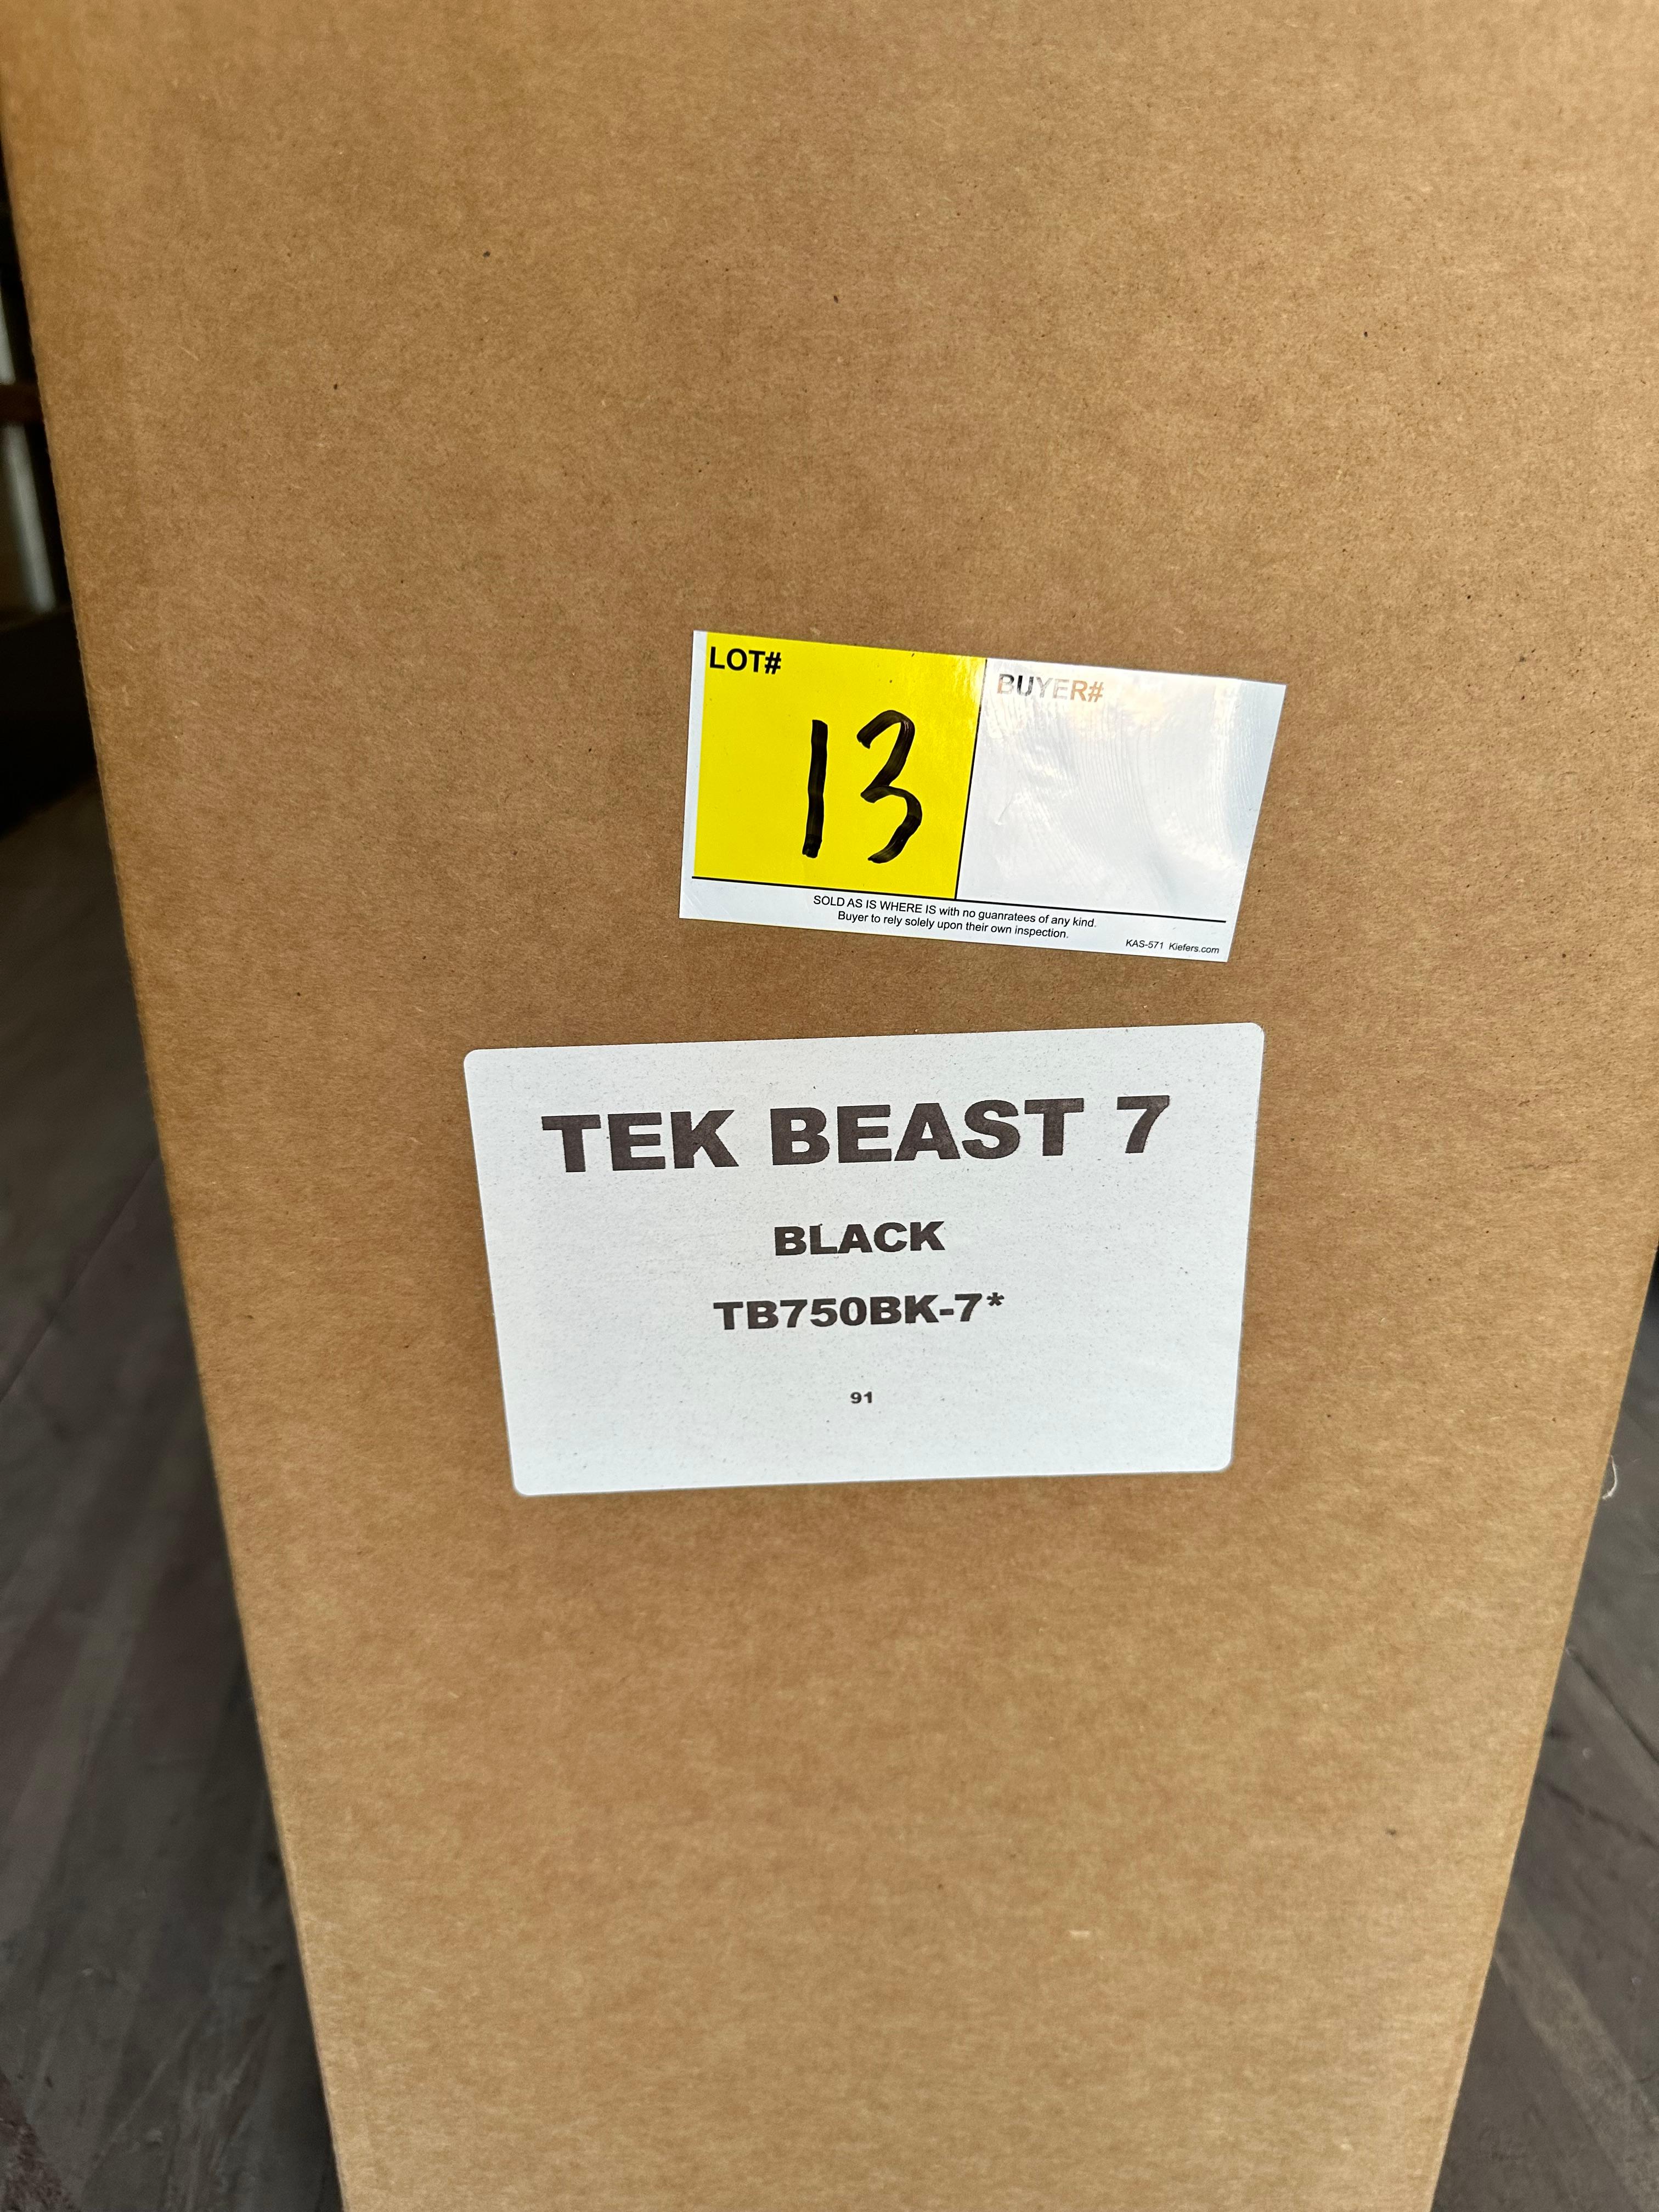 E- TEK BEAST 7, MODEL: TB750BK-7, COLOR: BLACK